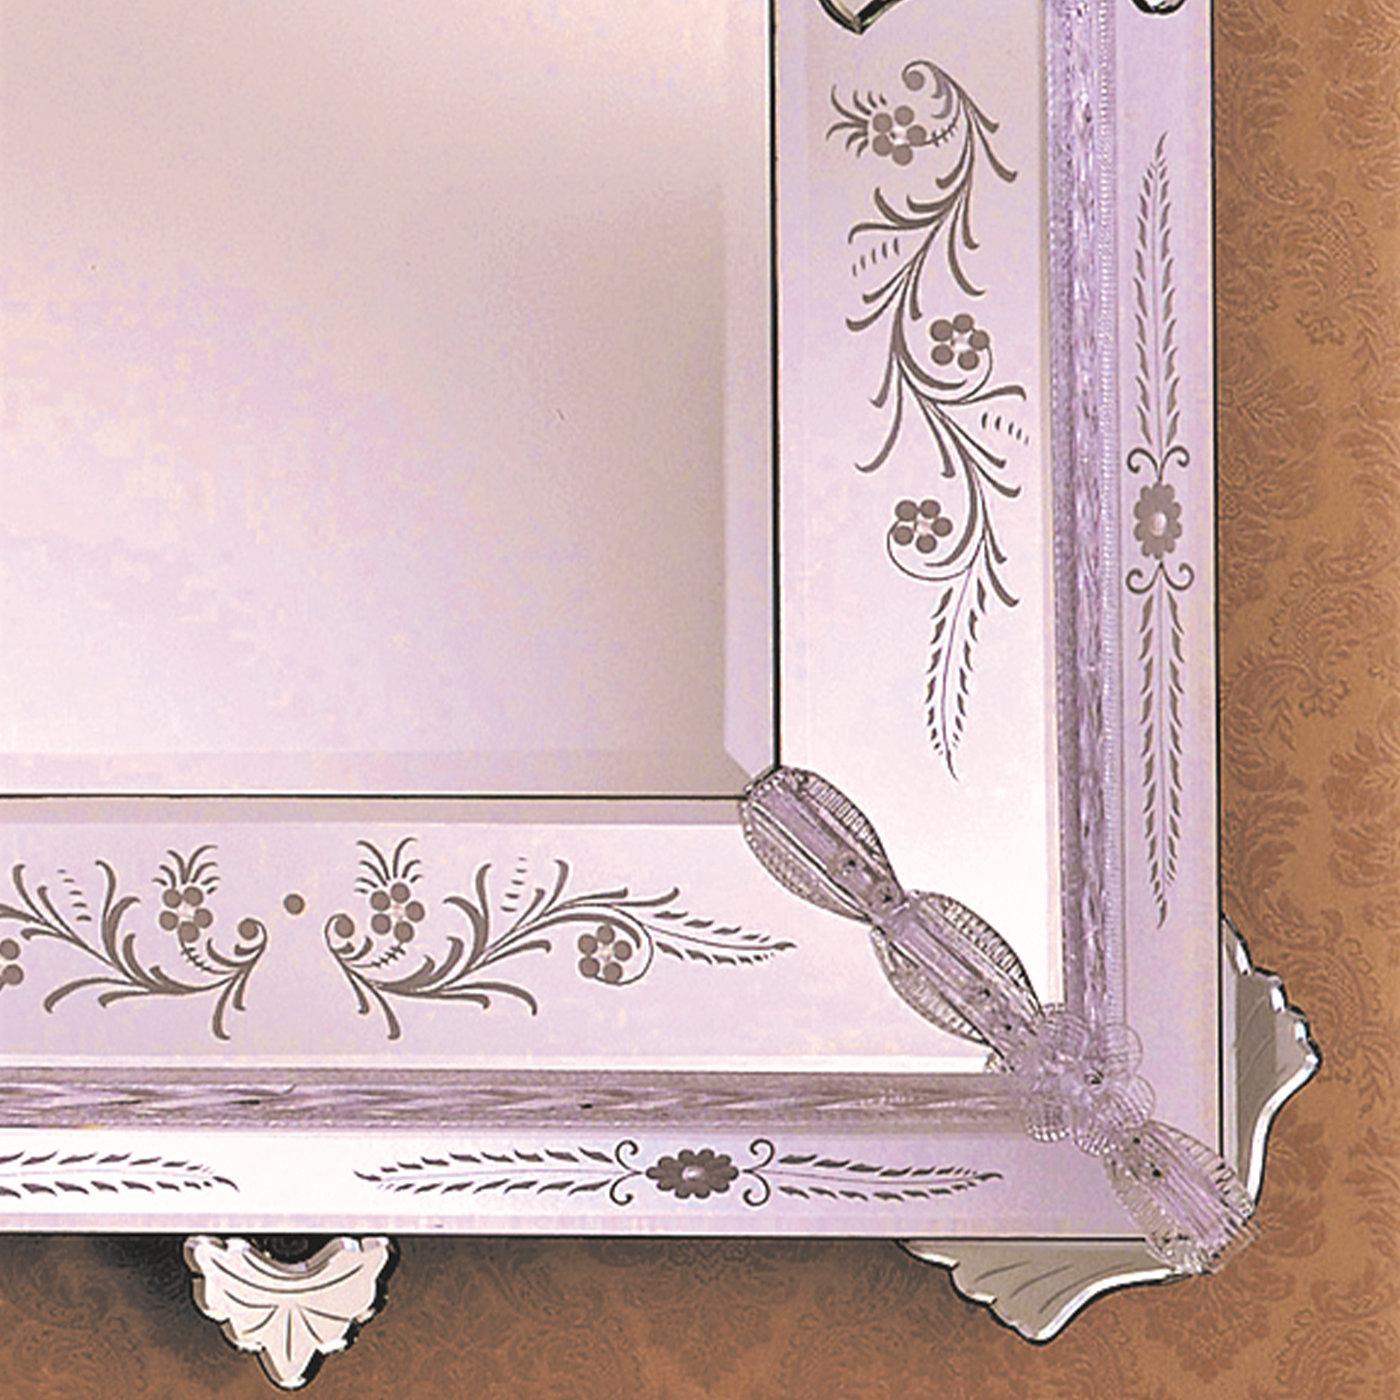 Dieser rechteckige Spiegel ist ein Beispiel für die unübertroffene Handwerkskunst, die von den Glasmachermeistern aus Murano nach traditionellen Techniken aus dem 14. Der Rahmen ist mit eleganten Blättern und Blumen aus transparentem und silbernem